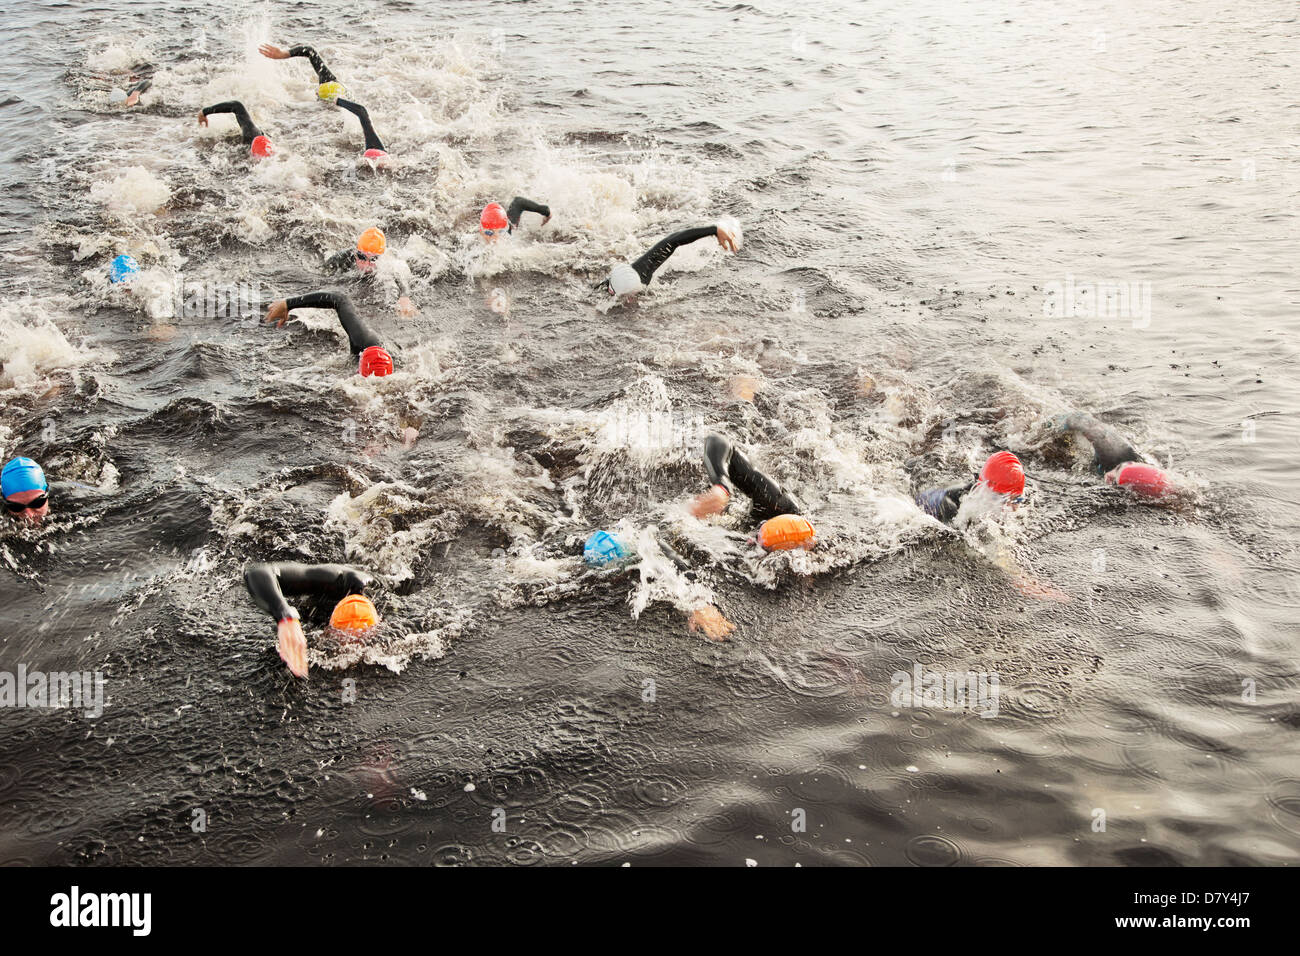 Les triathlètes natation dans l'eau Banque D'Images